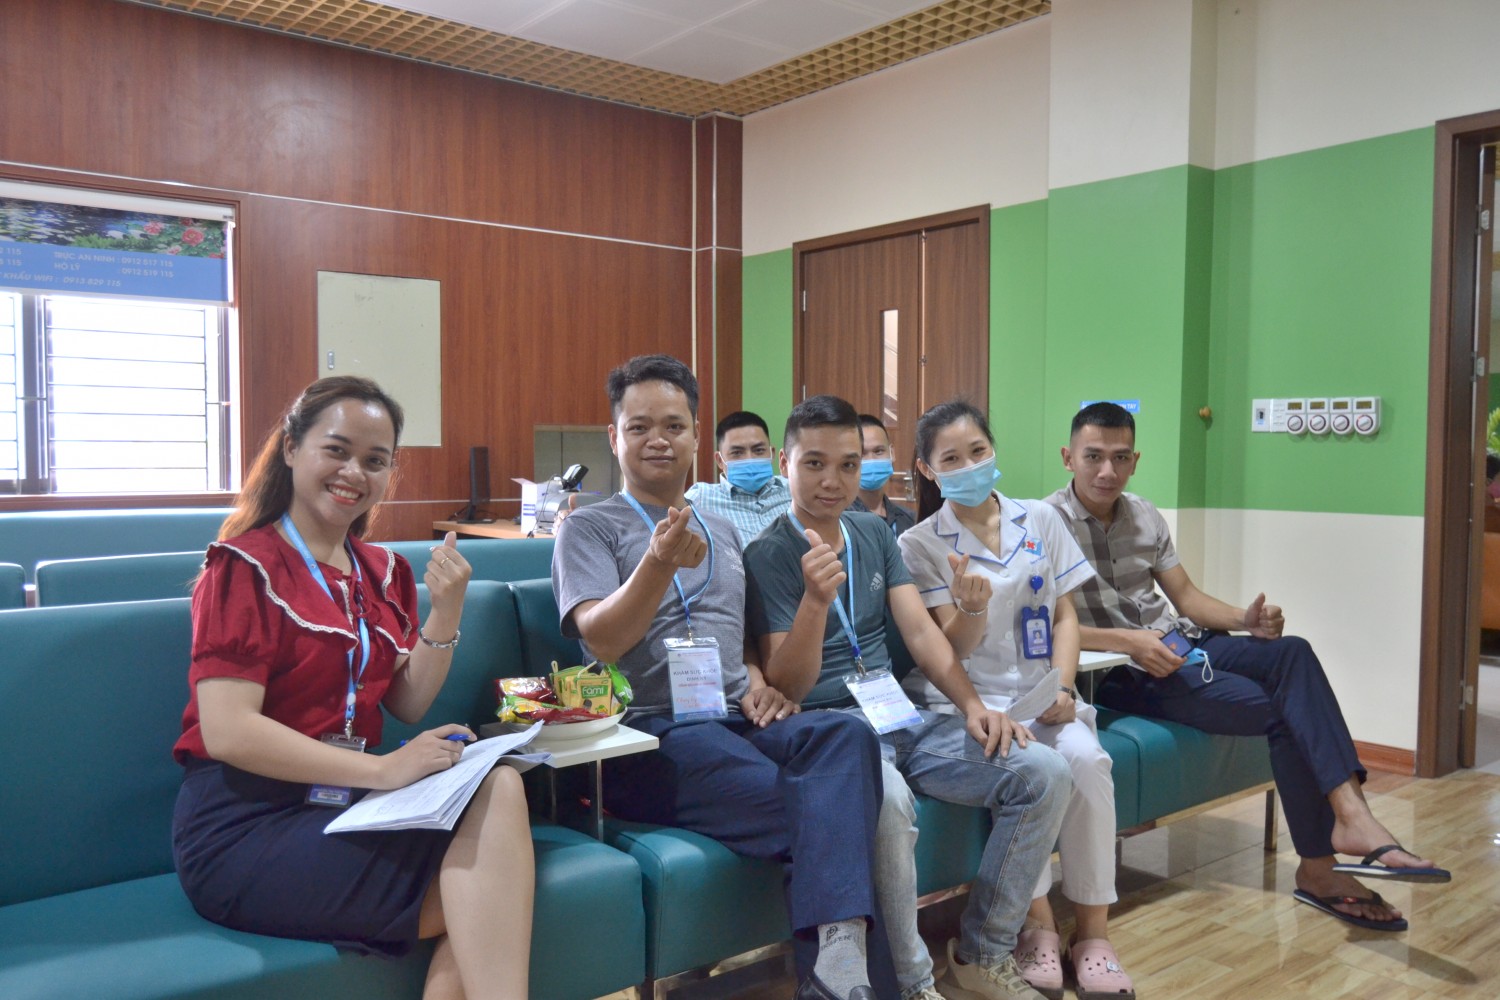 Gần 200 cán bộ, nhân viên Công ty xăng dầu Tuyên Quang (Petrolimex Tuyên Quang) được chăm sóc sức khỏe định kỳ tại Bệnh viện đa khoa Hùng Vương